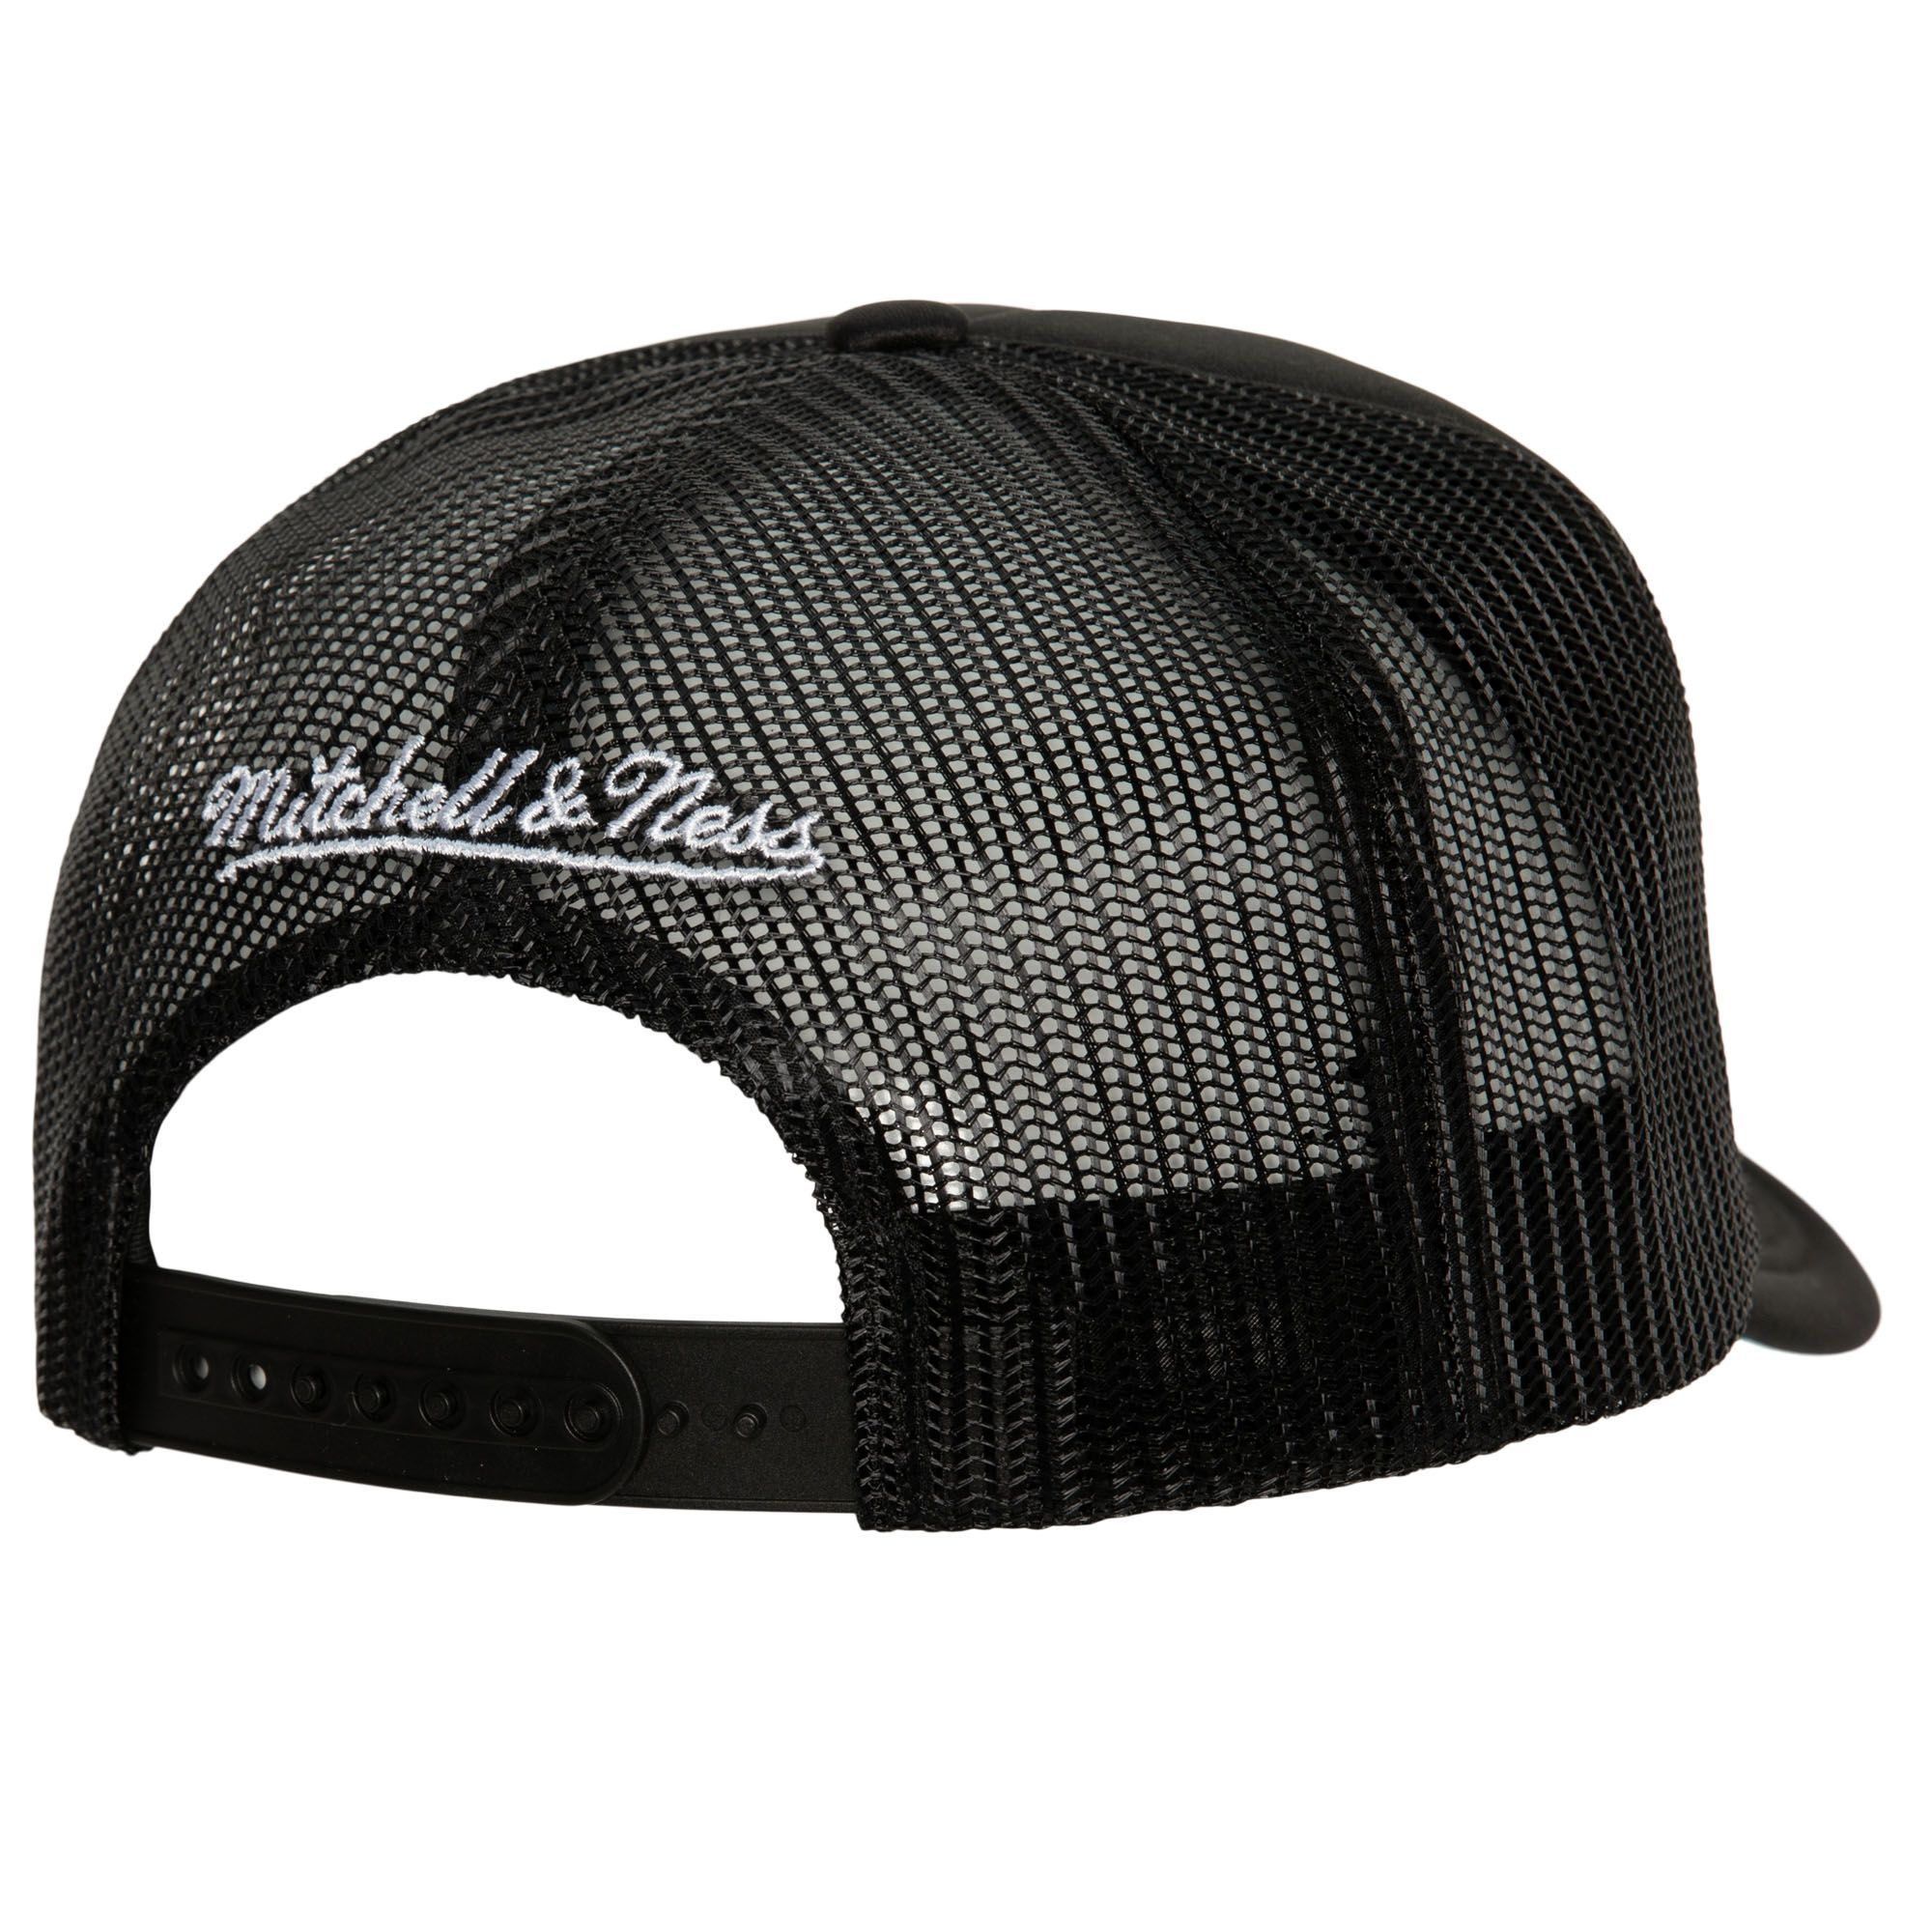 Mitchell & NessWs Trucker Coop San Francisco Giants Snapback Adjustable Hat